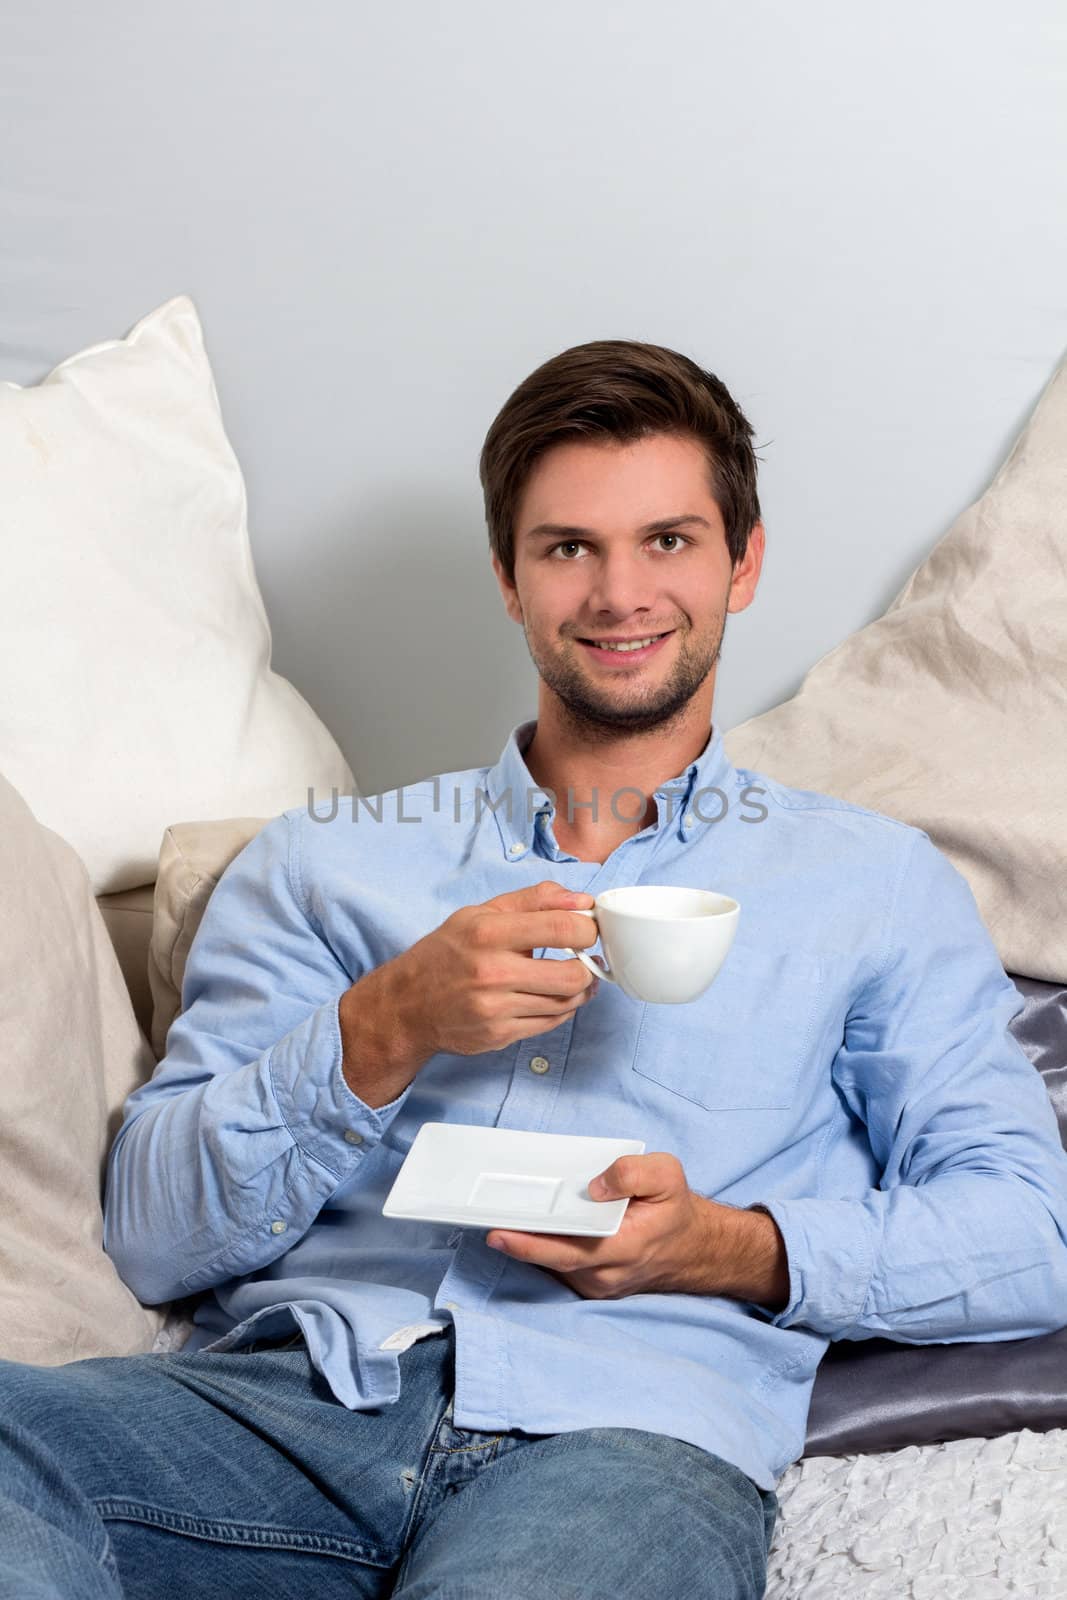 Young man enjoying a coffeebreak by dwaschnig_photo